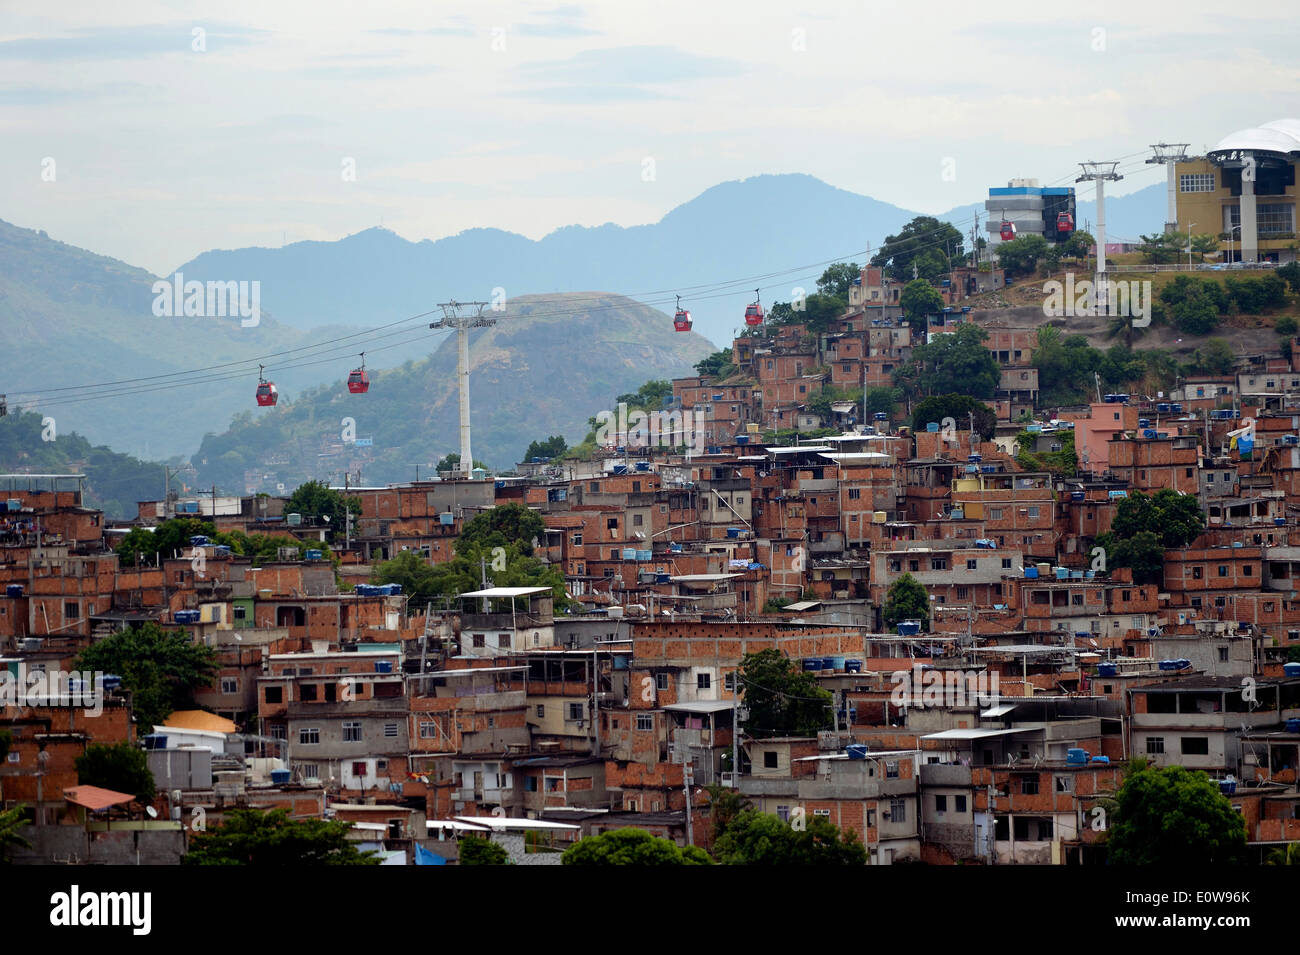 Complexo do Alemao favela, a cable car connects several built-up hills, Rio de Janeiro, Brazil Stock Photo